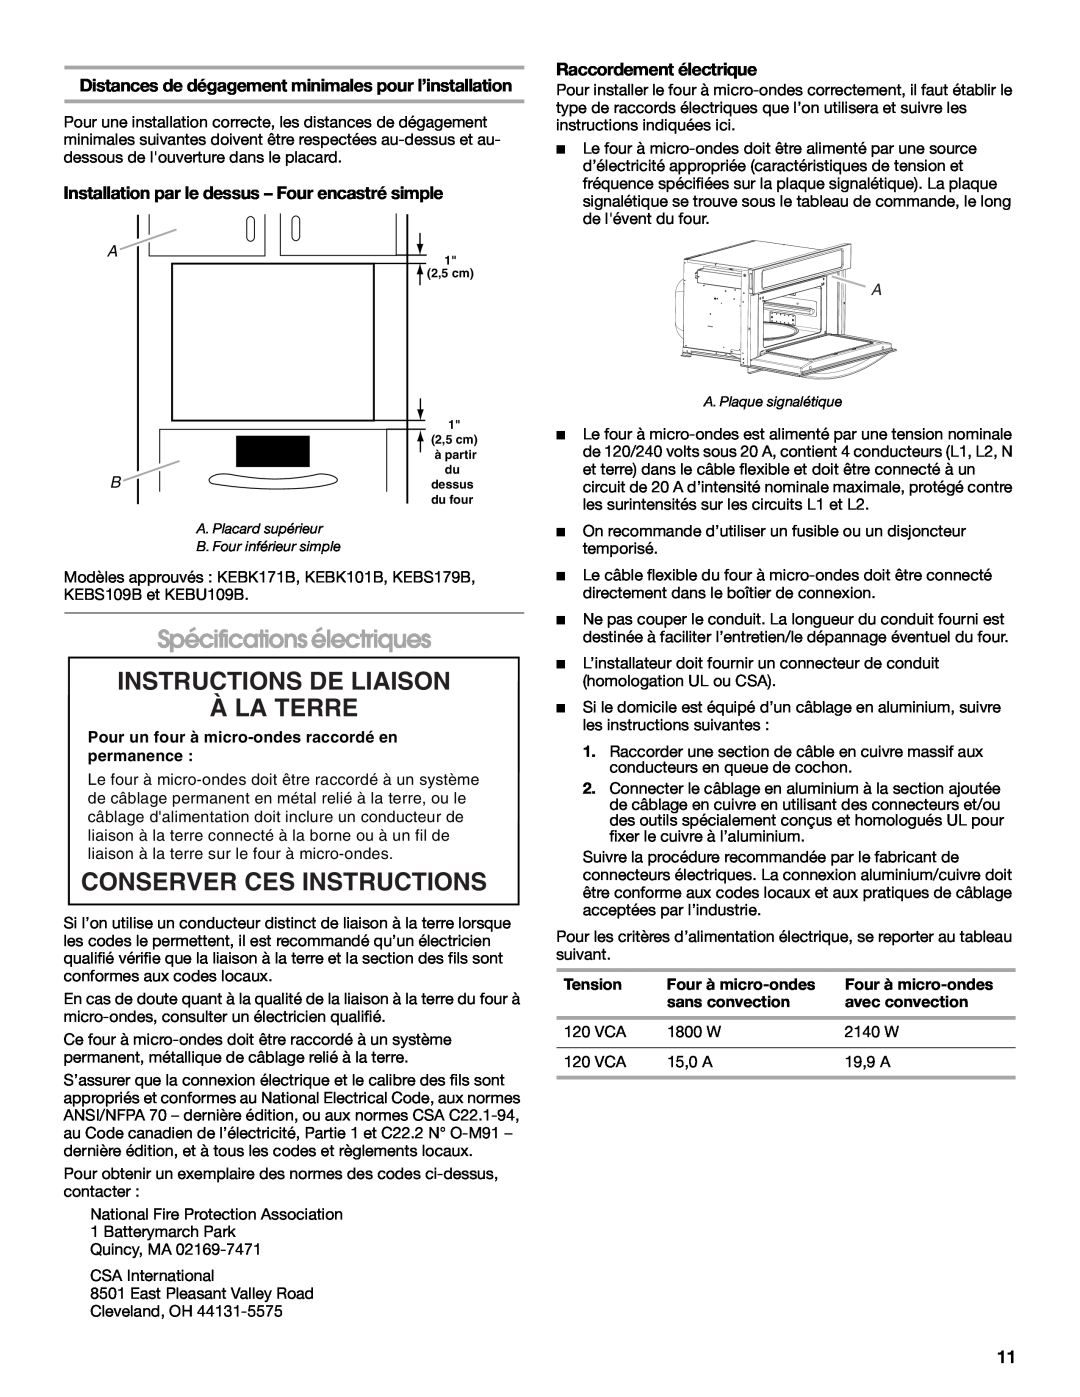 KitchenAid W10351317A Spécifications électriques, Instructions De Liaison À La Terre, Conserver Ces Instructions, Tension 